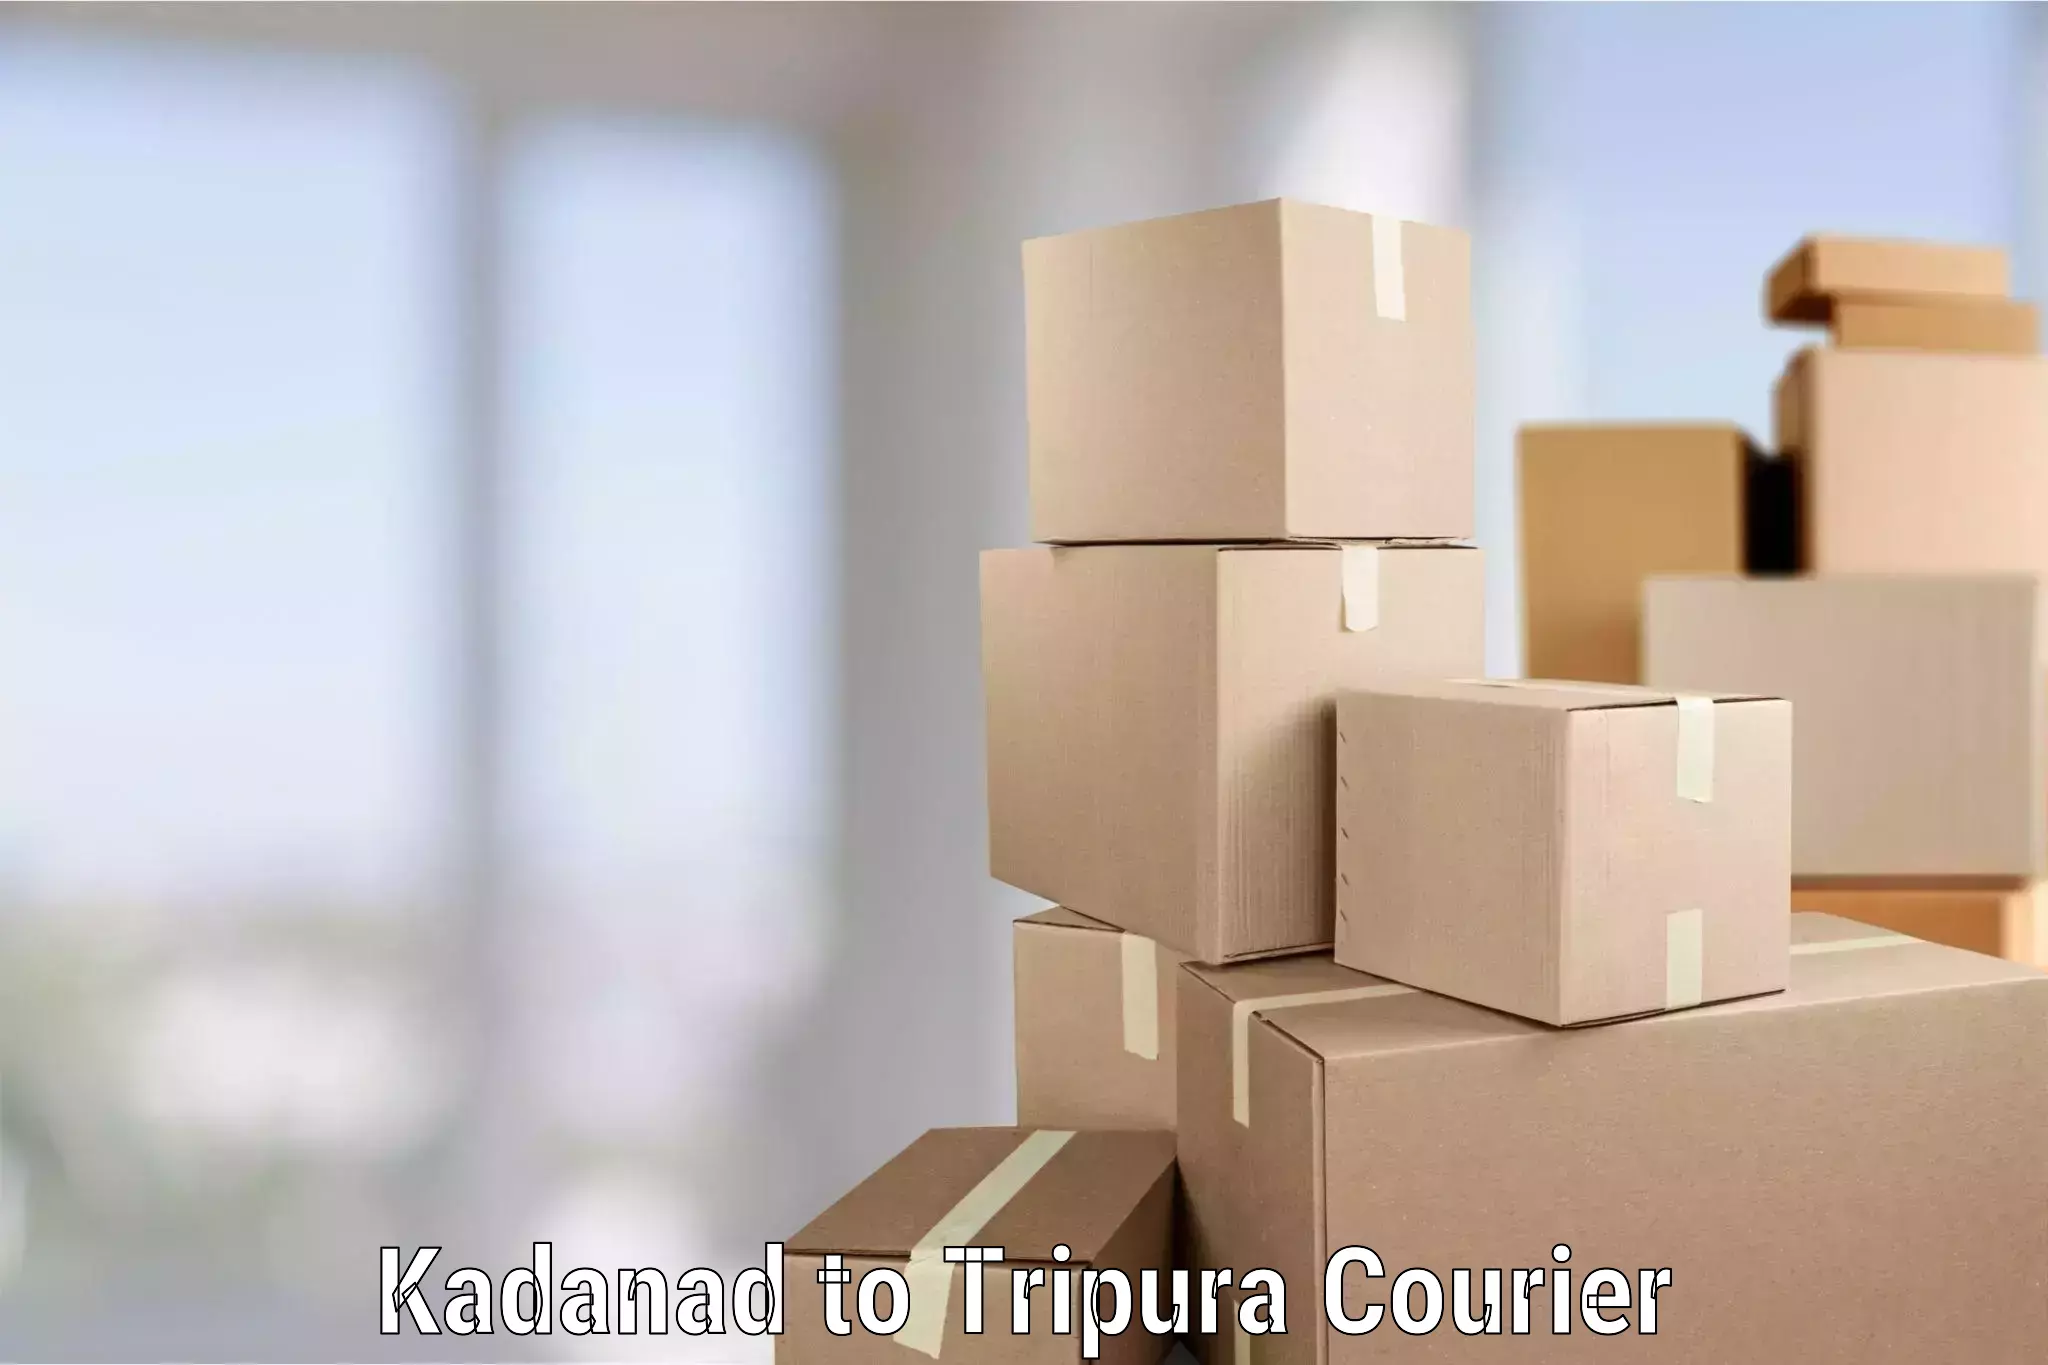 Furniture transport specialists Kadanad to North Tripura